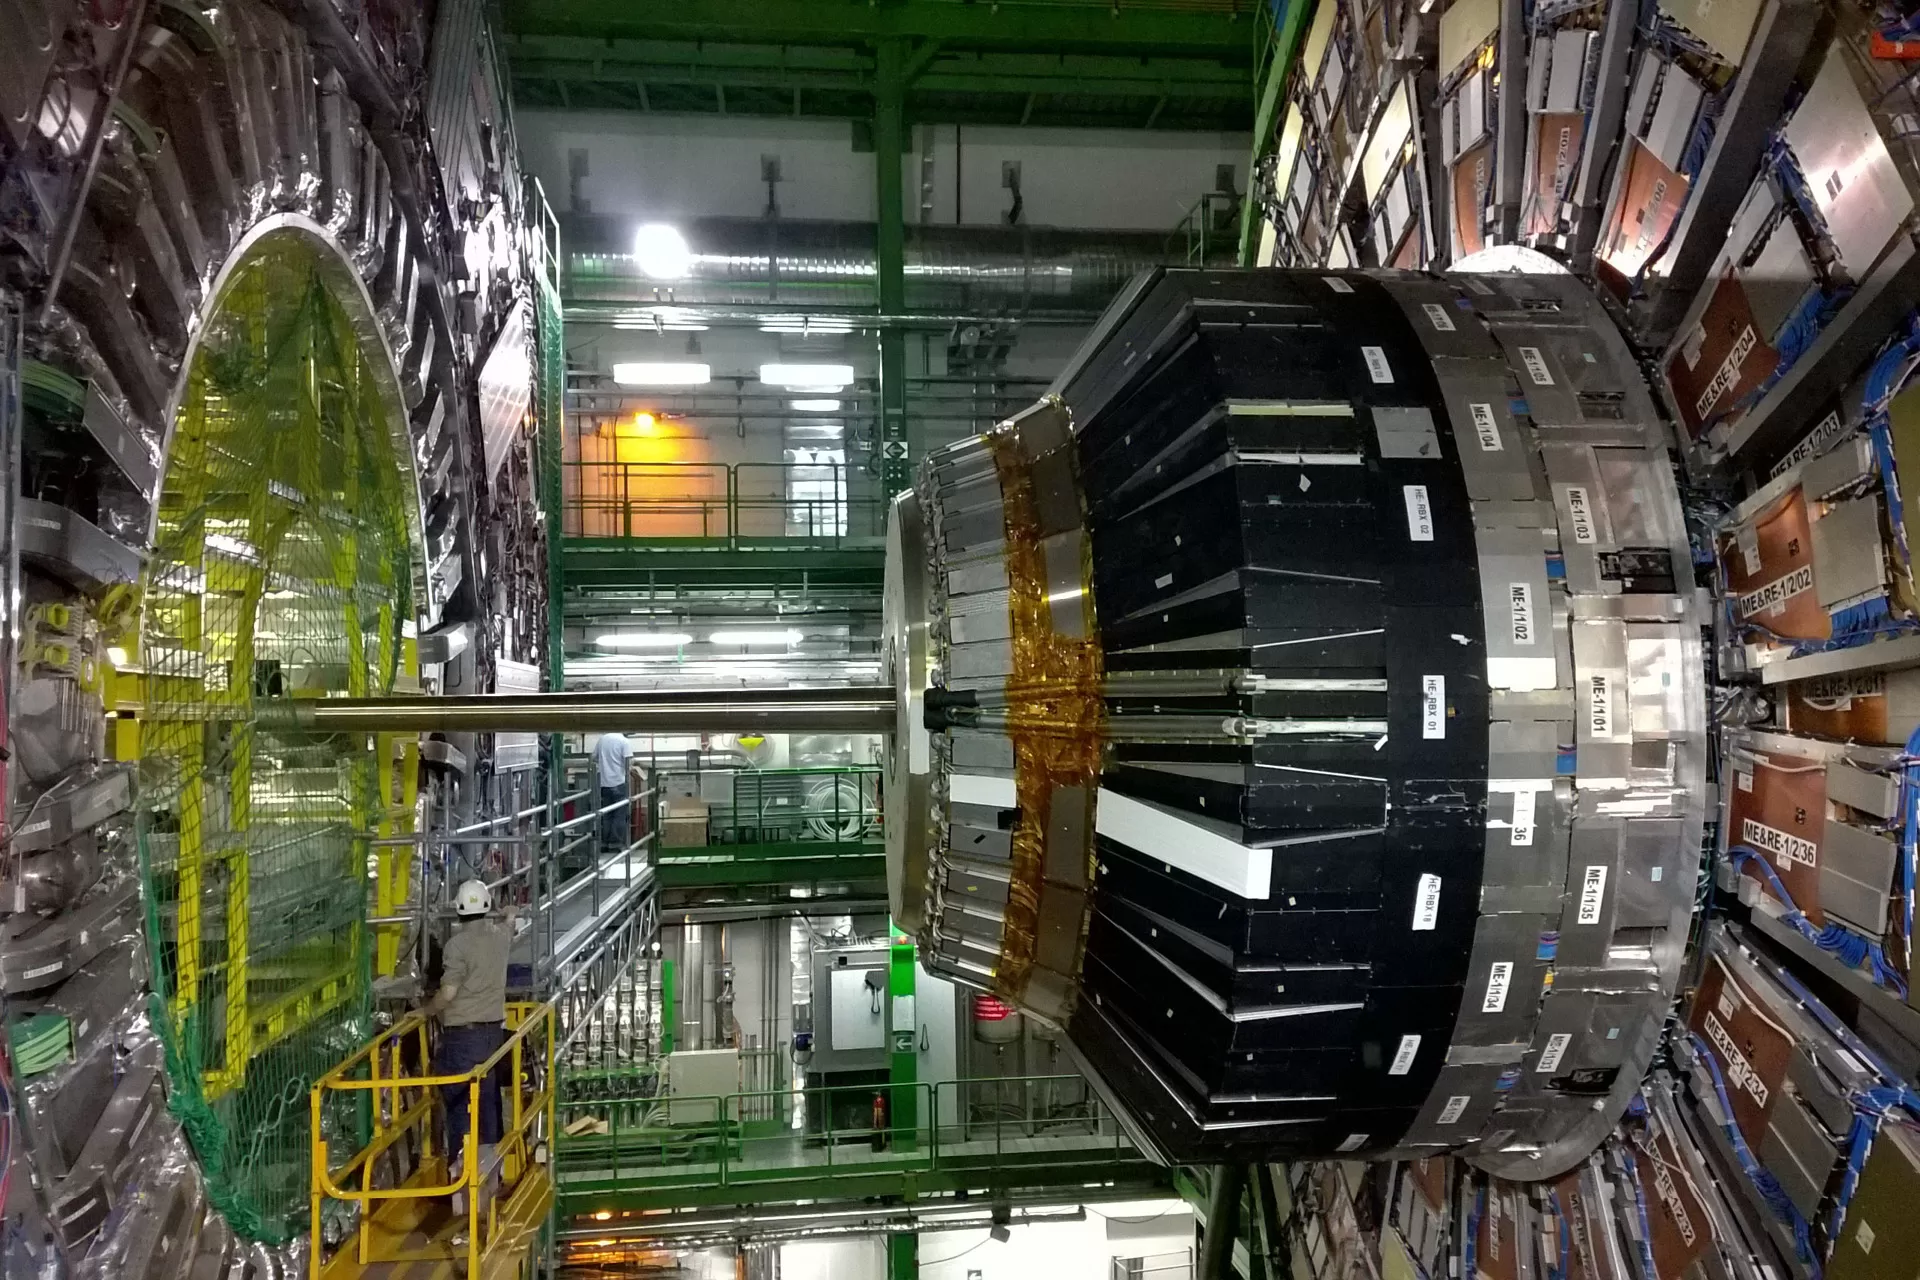 Teilchenbeschleuniger zur Erforschung von Elementarteilchen am CERN, der Europäischen Organisation für Kernforschung.